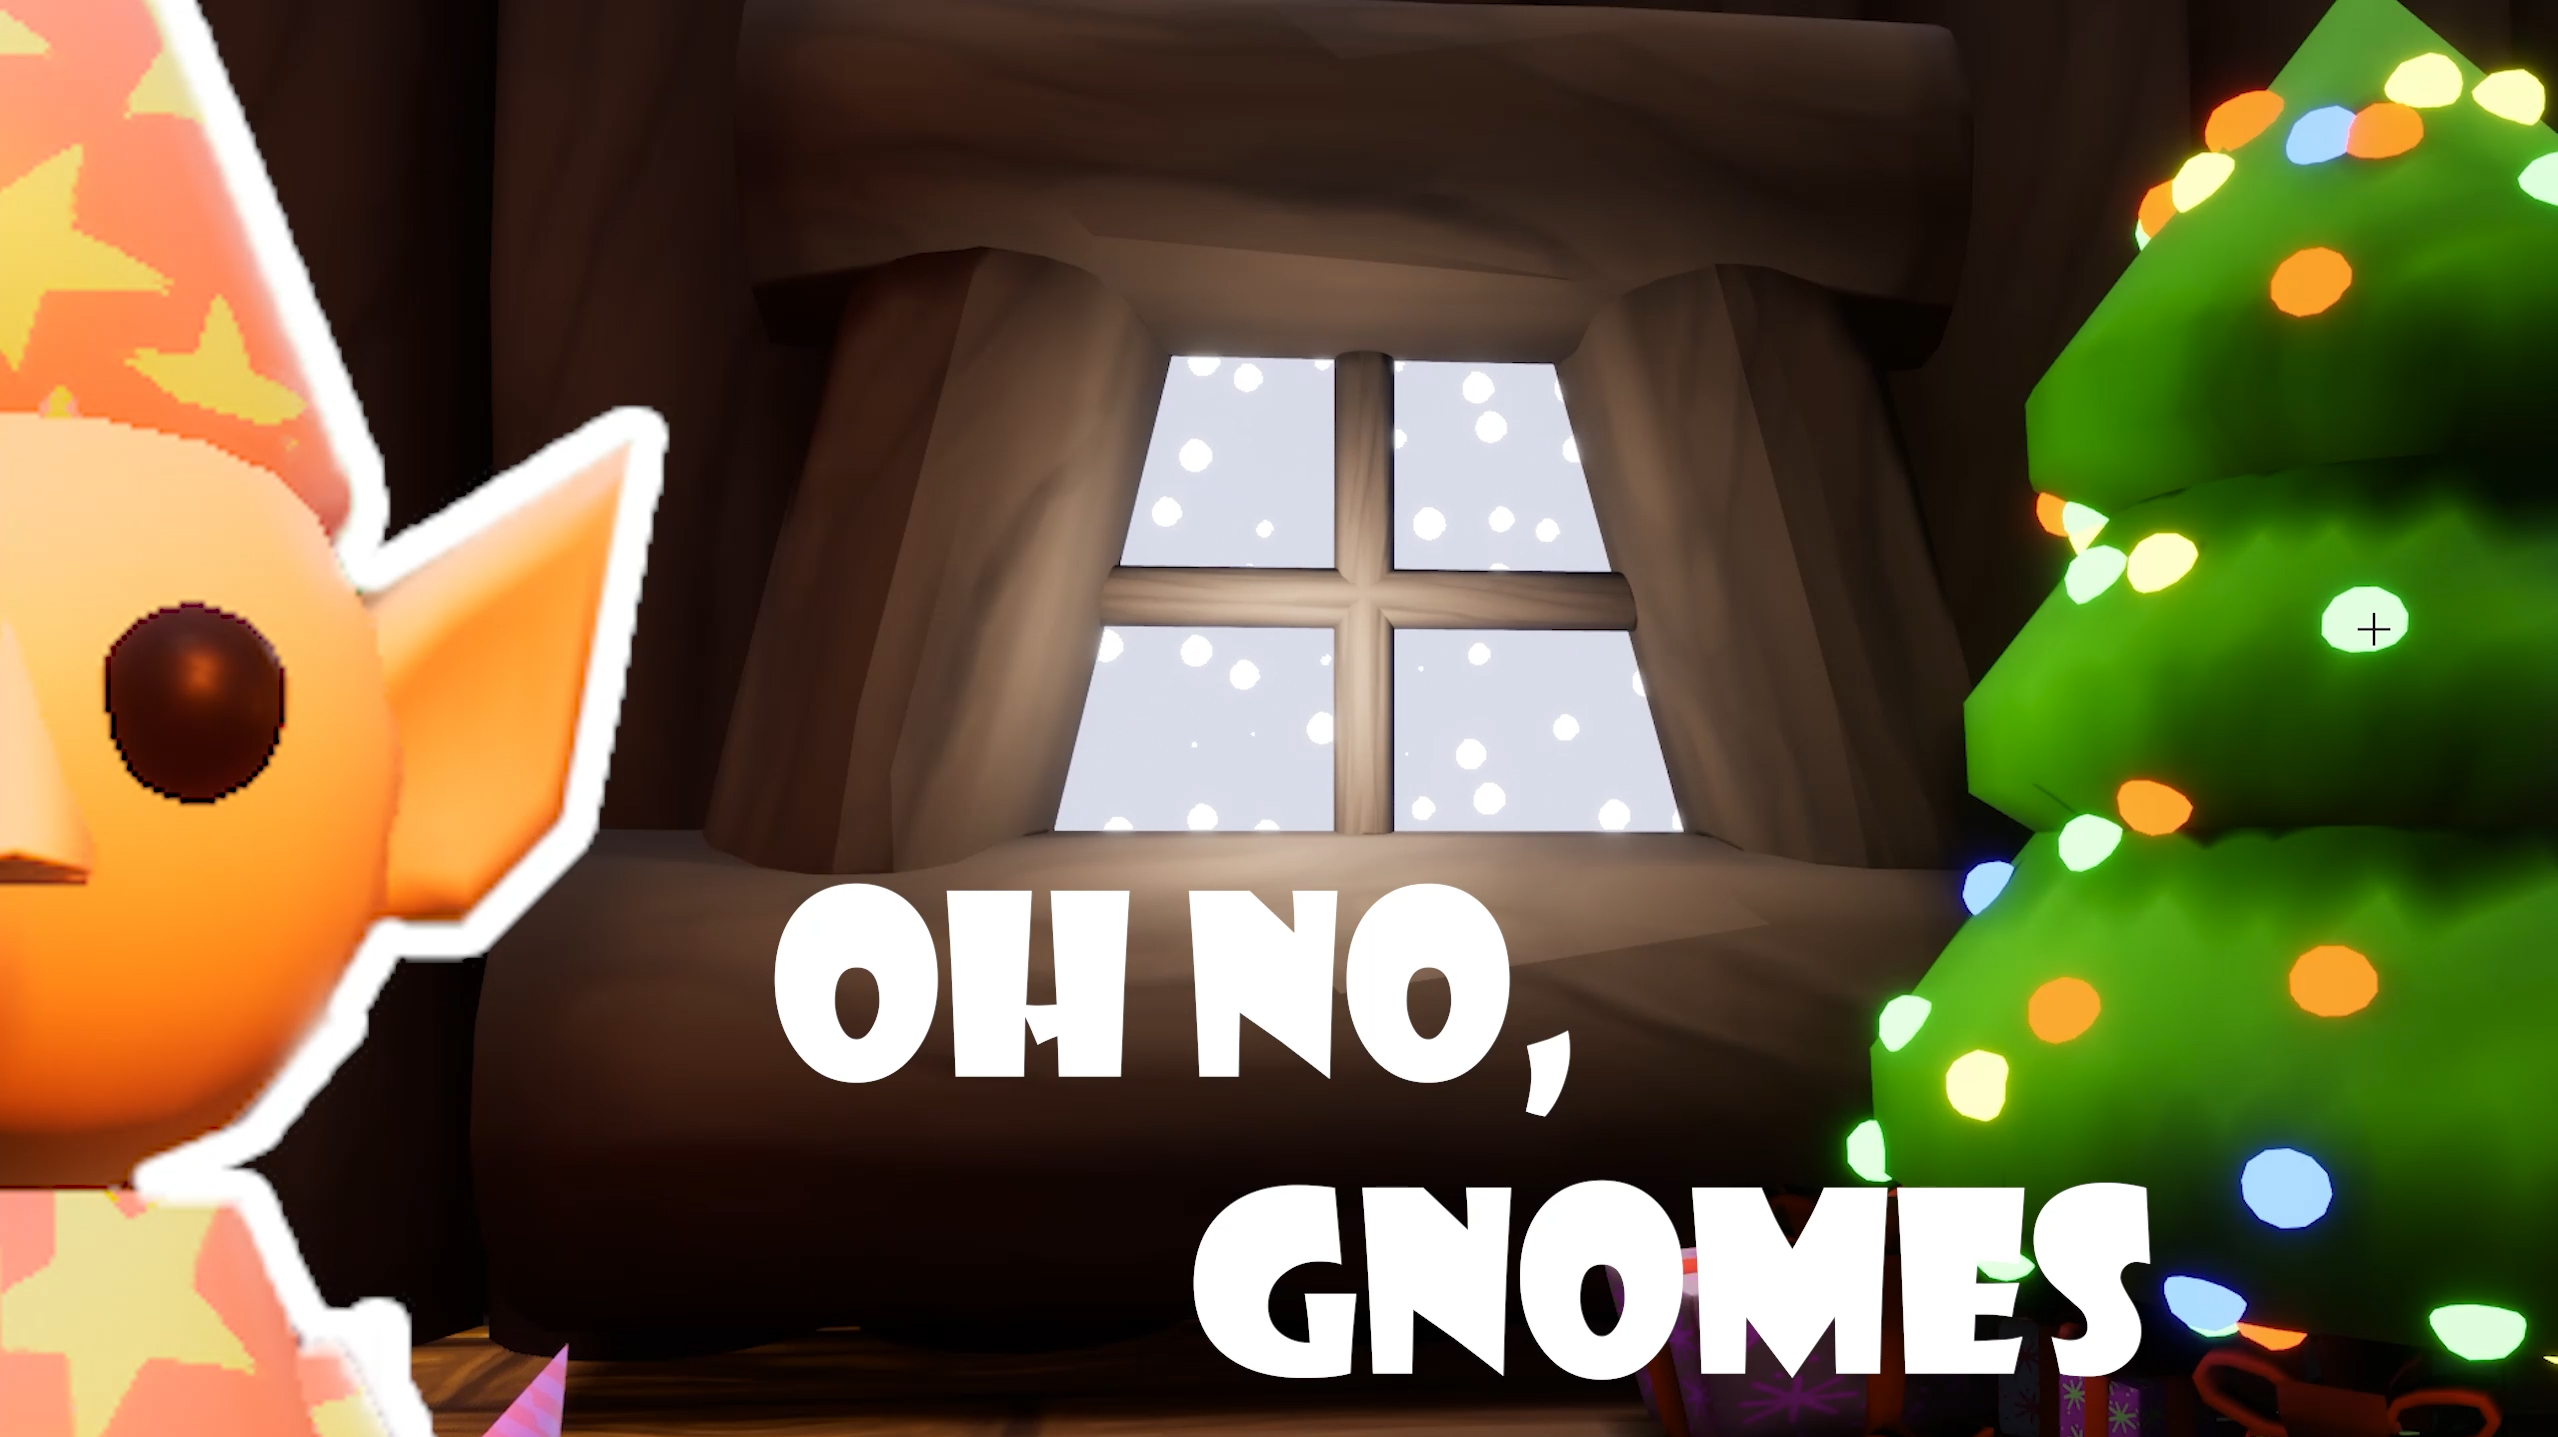 OH NO! GNOMES